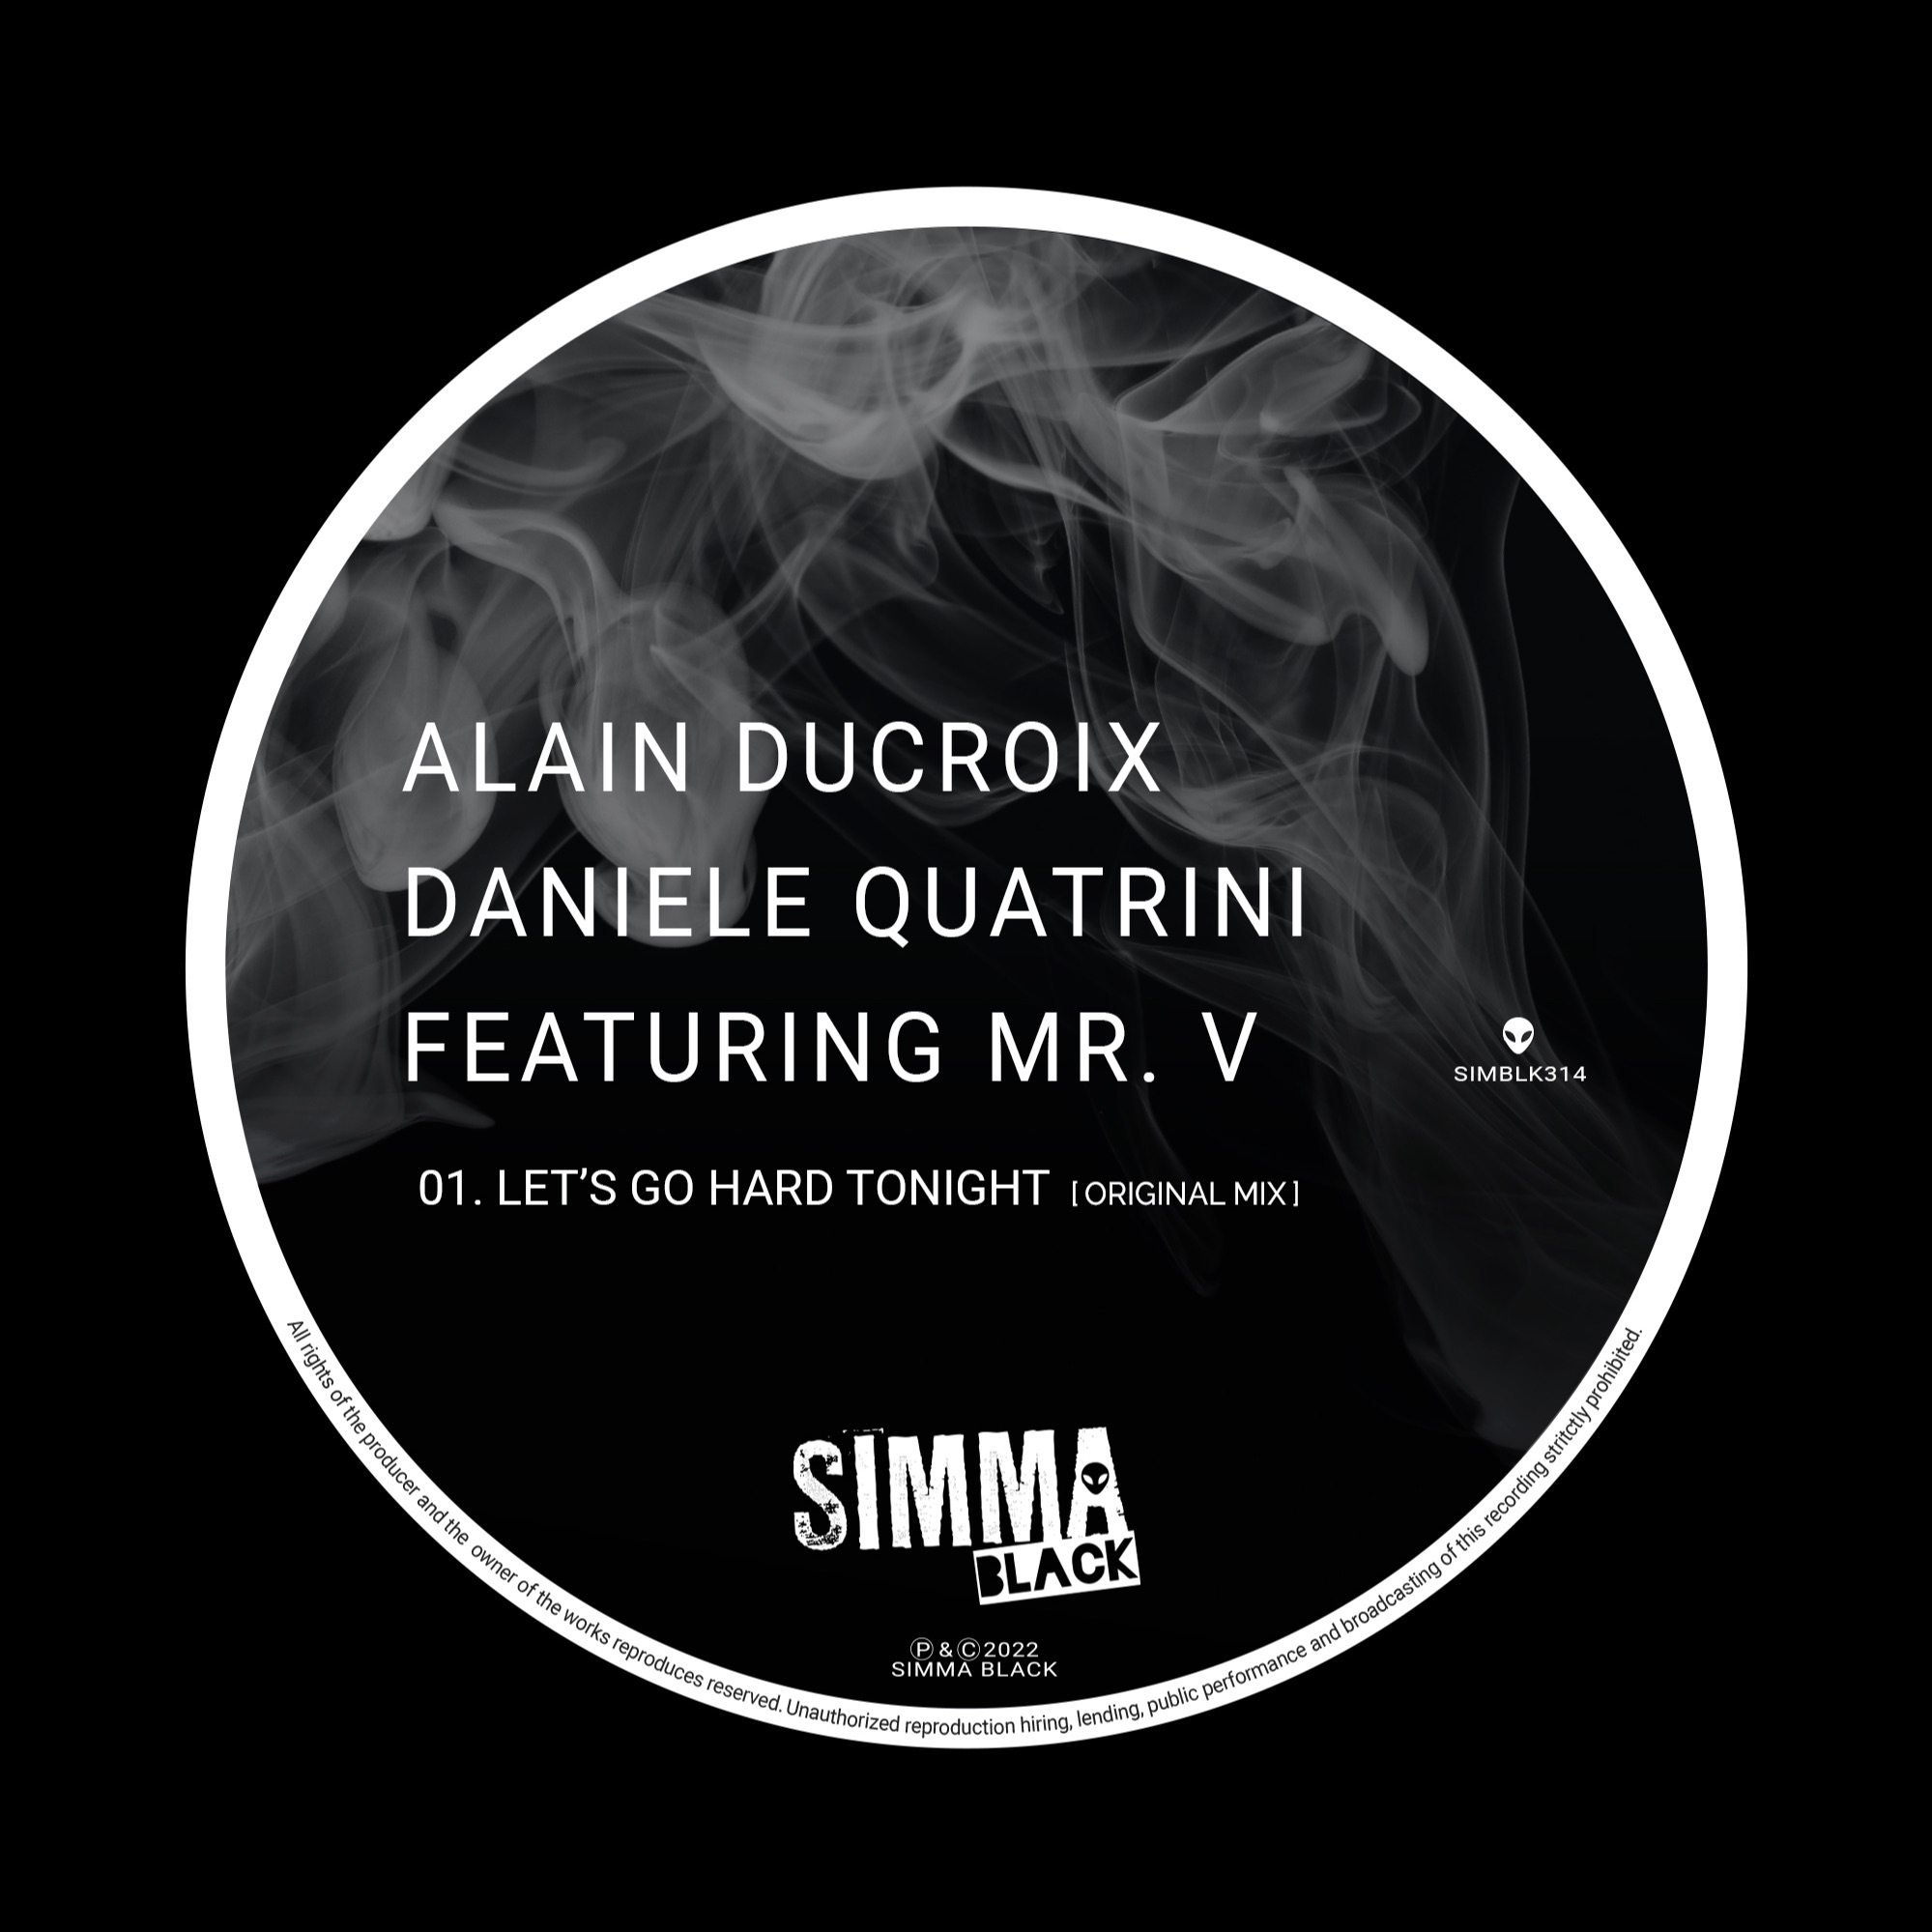 ဒေါင်းလုပ် SIMBLK314 | Alain Ducroix, Daniele Quatrini Featuring Mr. V - Let's Go Hard Tonight (Original Mix)